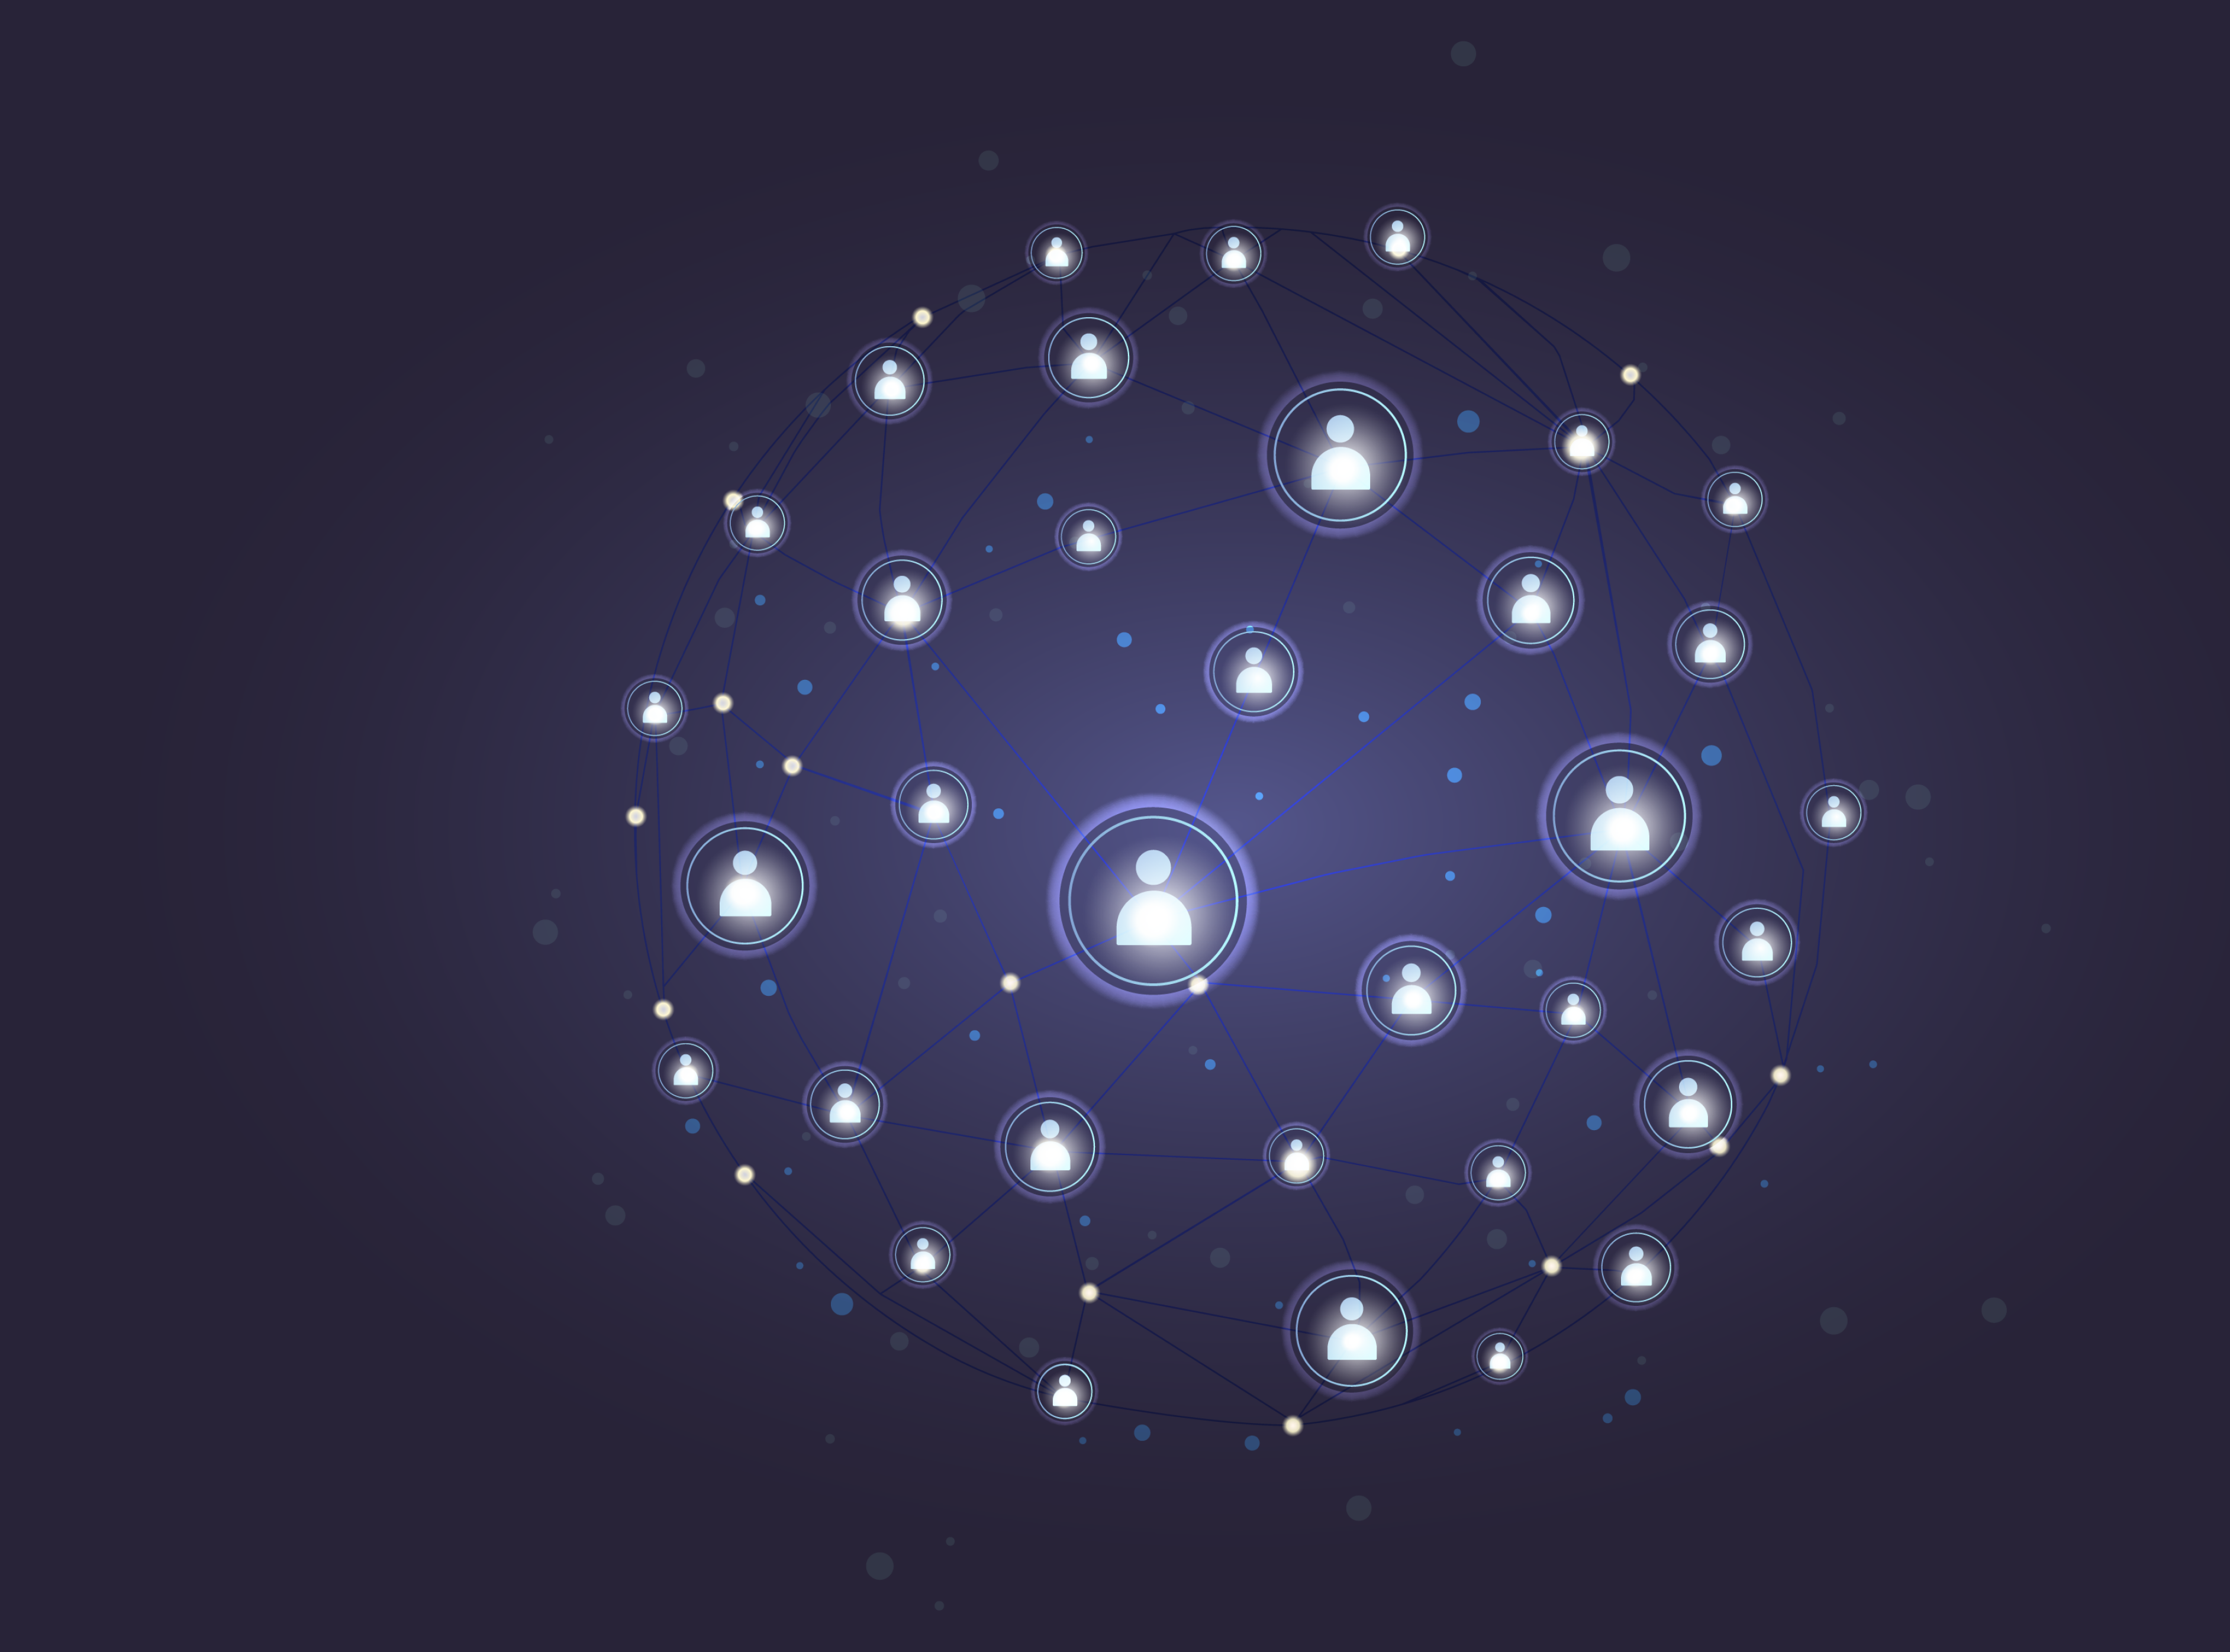 Yıldızlı gökyüzünün arka planına karşı kullanıcıların avatarları birbirleriyle bağlantılı